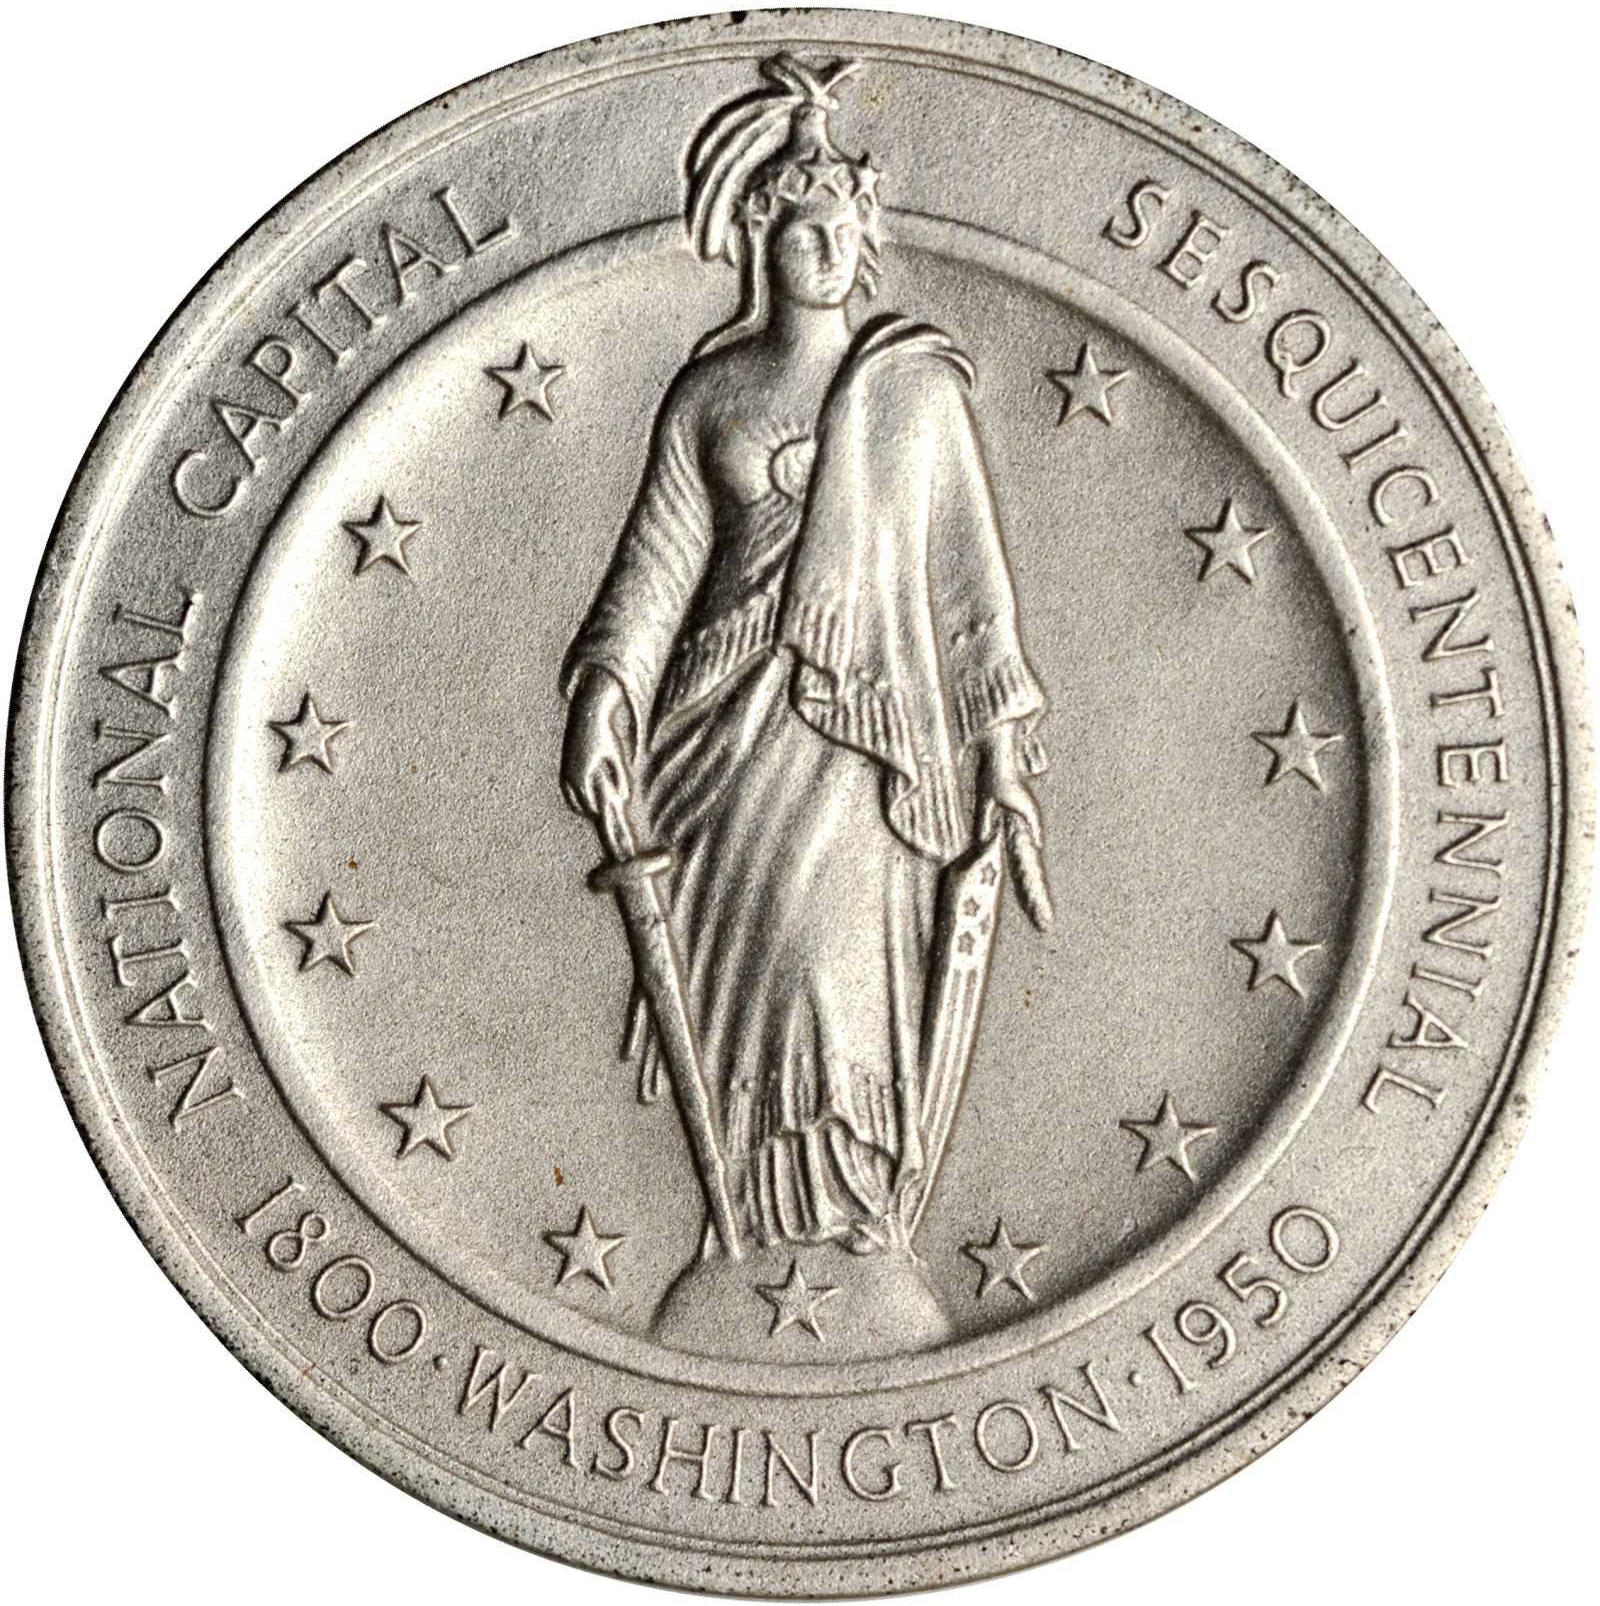 Silver Coin The Washington D.C